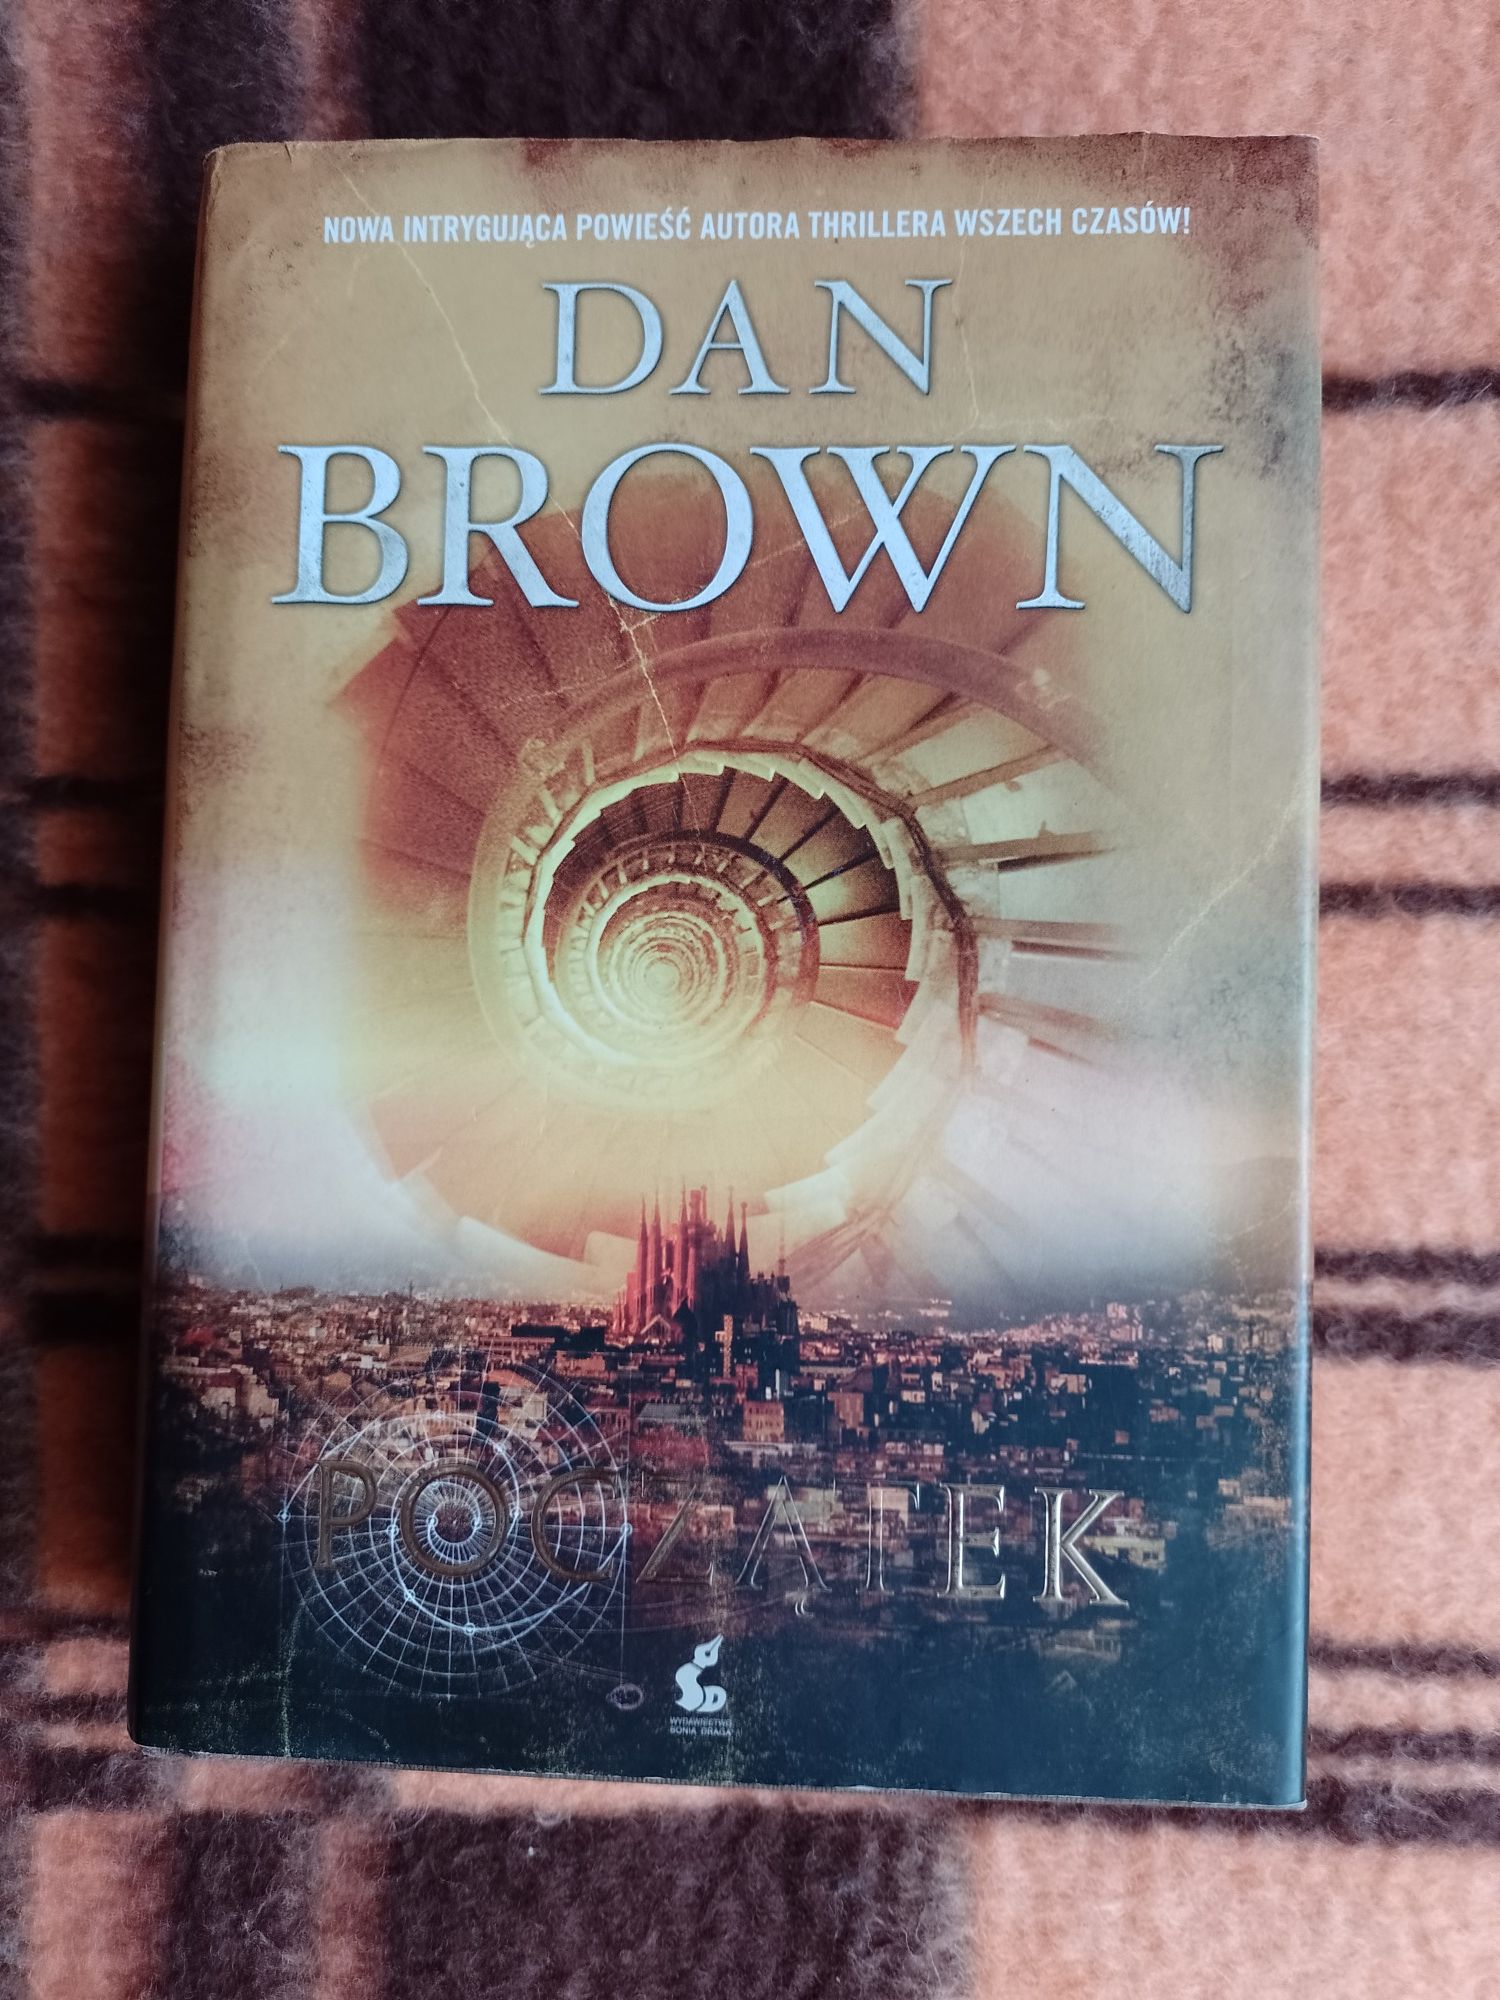 Dan Brown "Początek"